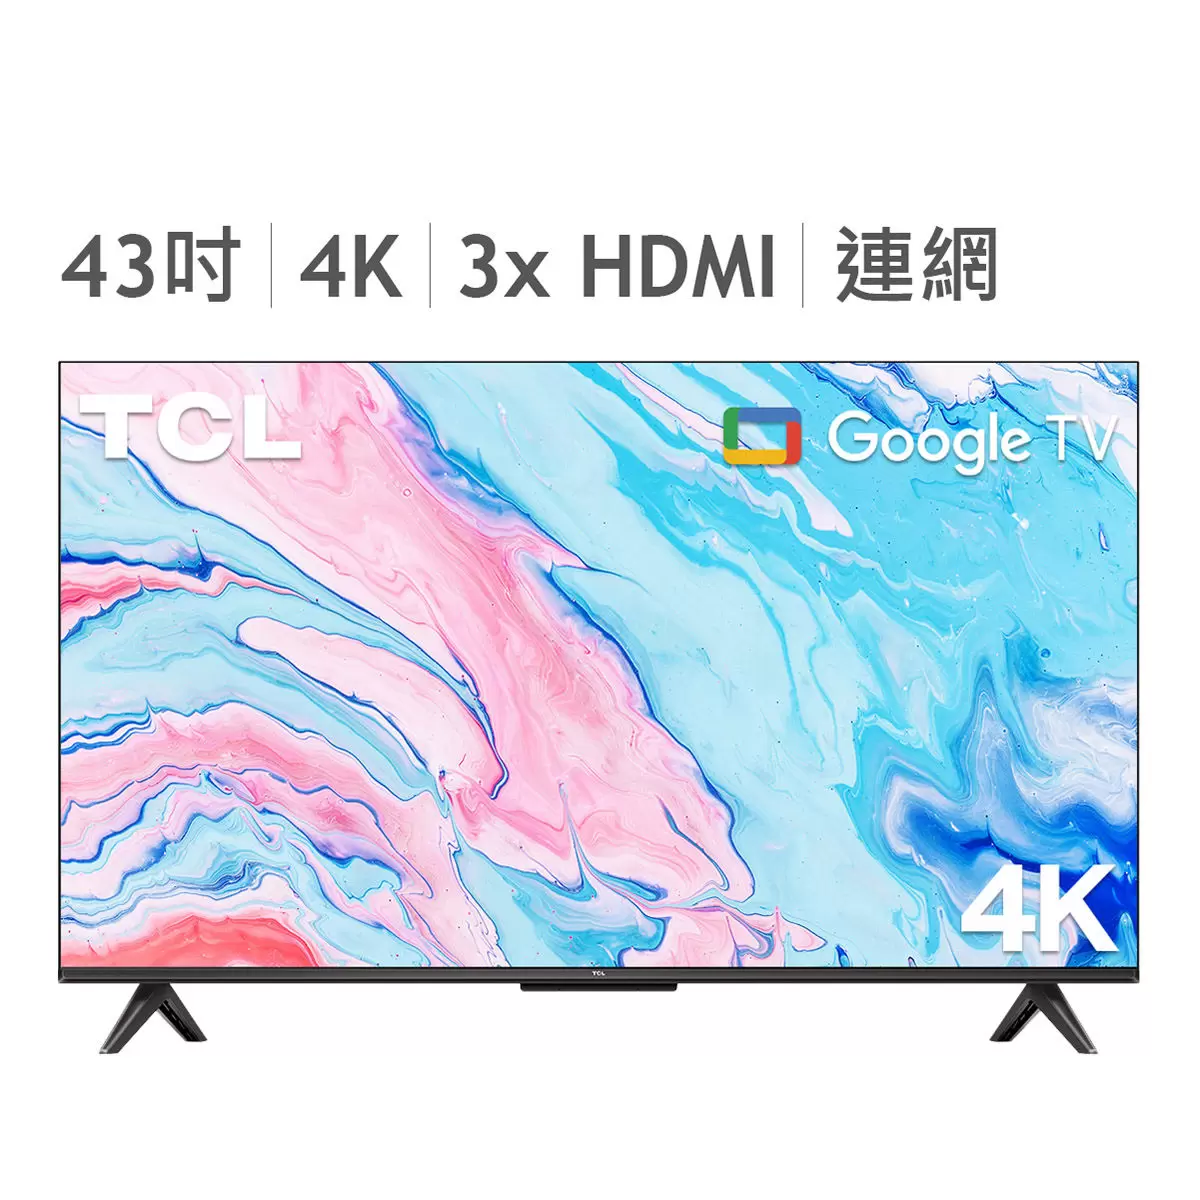 TCL 43吋 4K UHD Google TV 智能連網液晶顯示器不含視訊盒 43P735 7入組